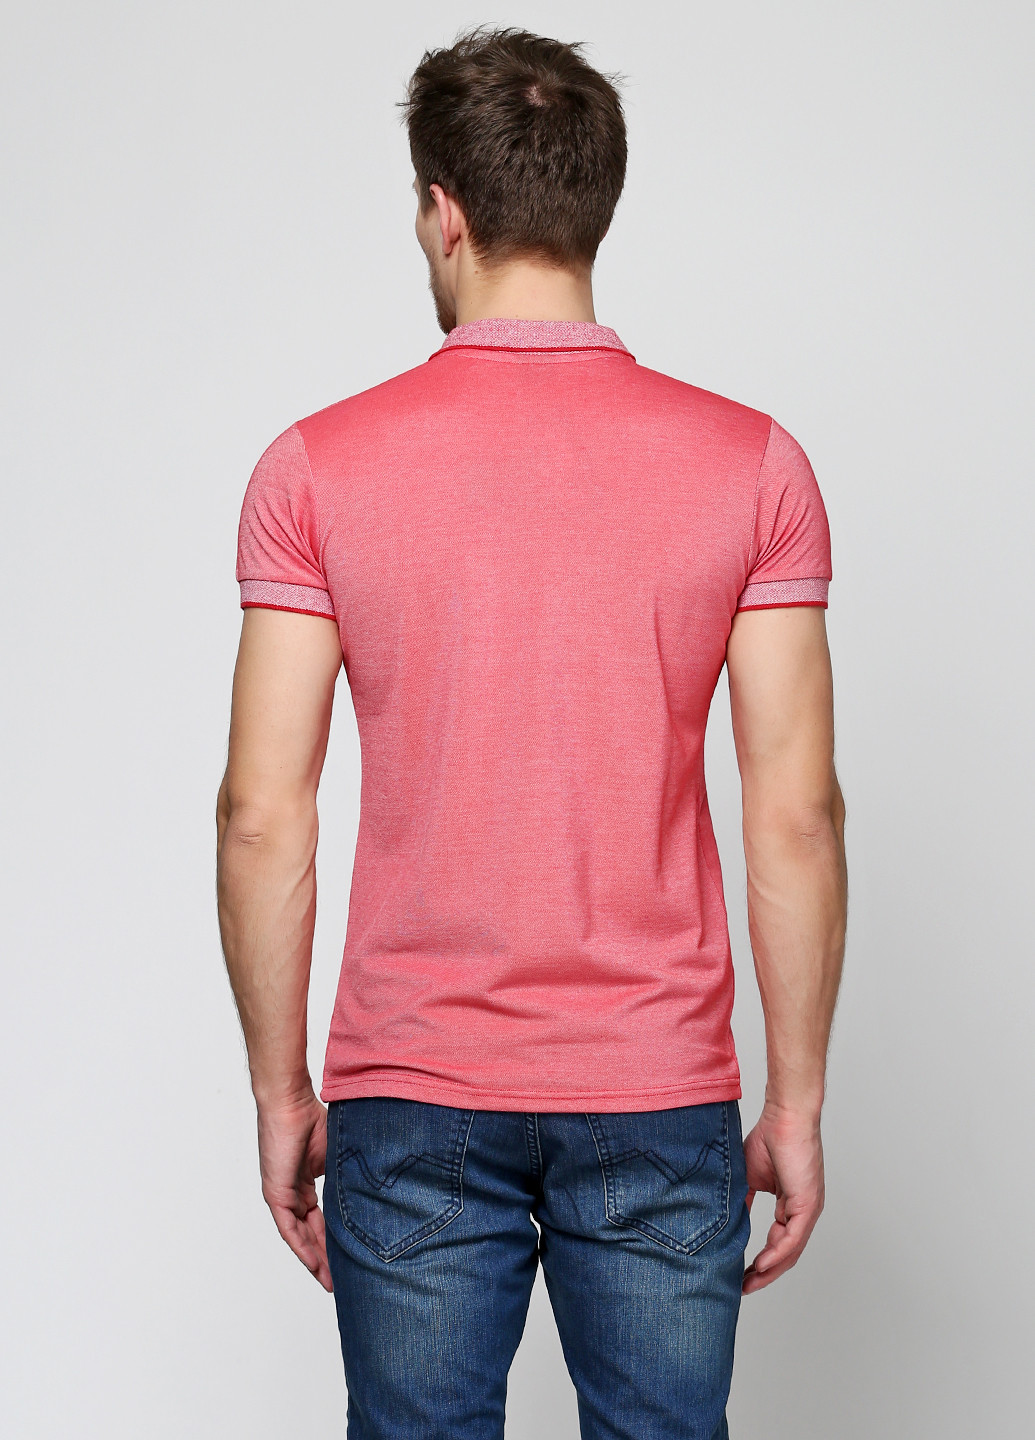 Красная футболка-поло для мужчин EL & KEN однотонная